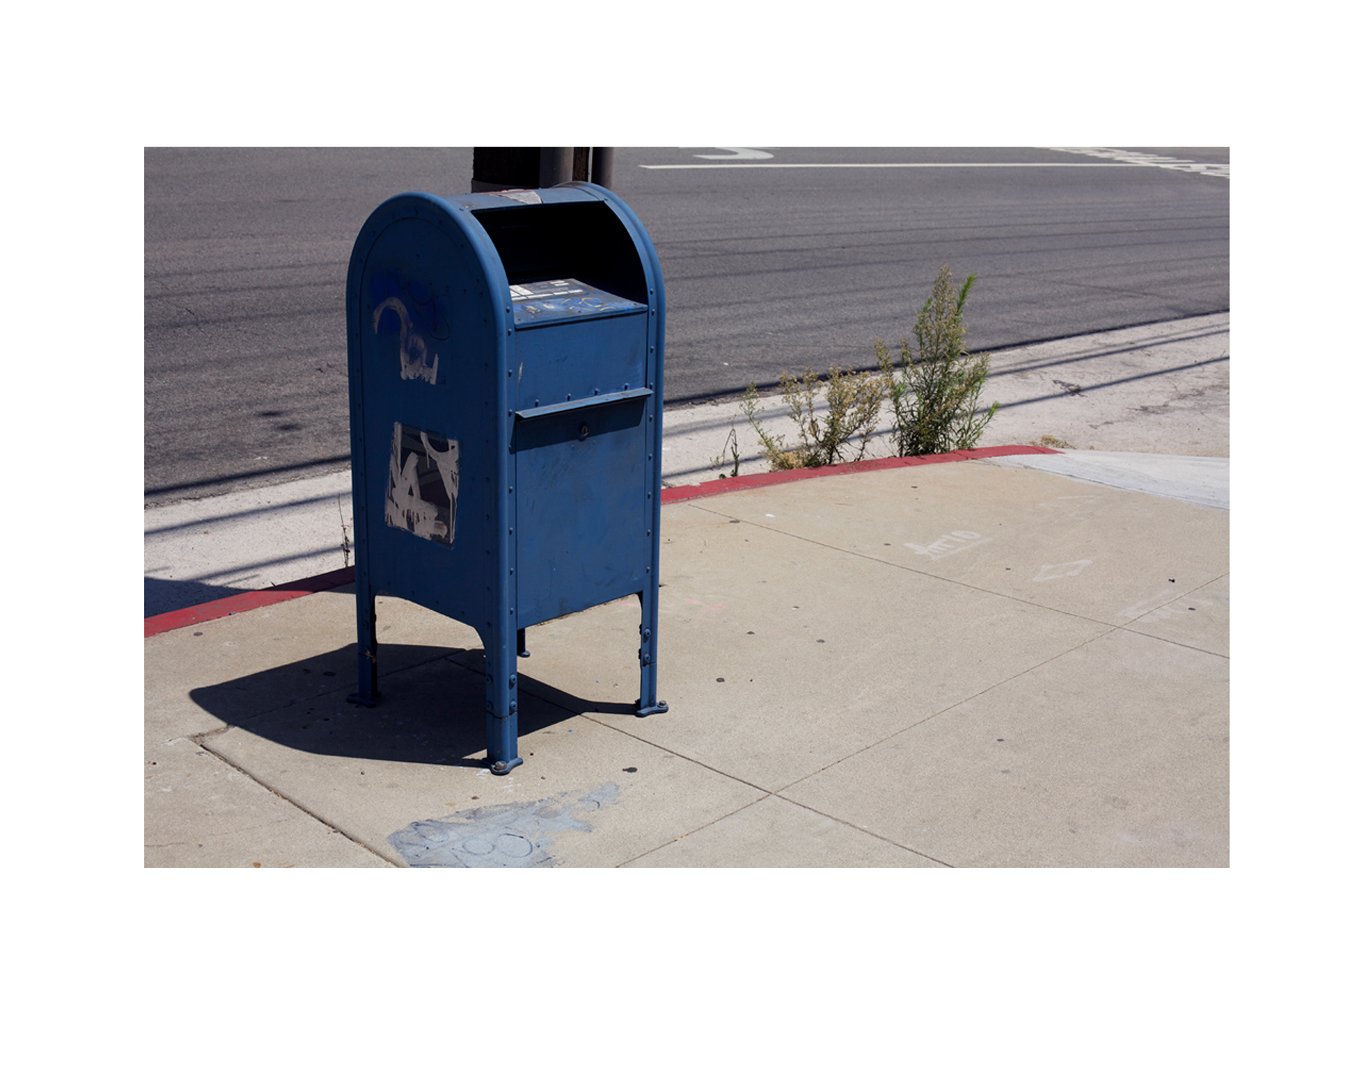 Mail Box